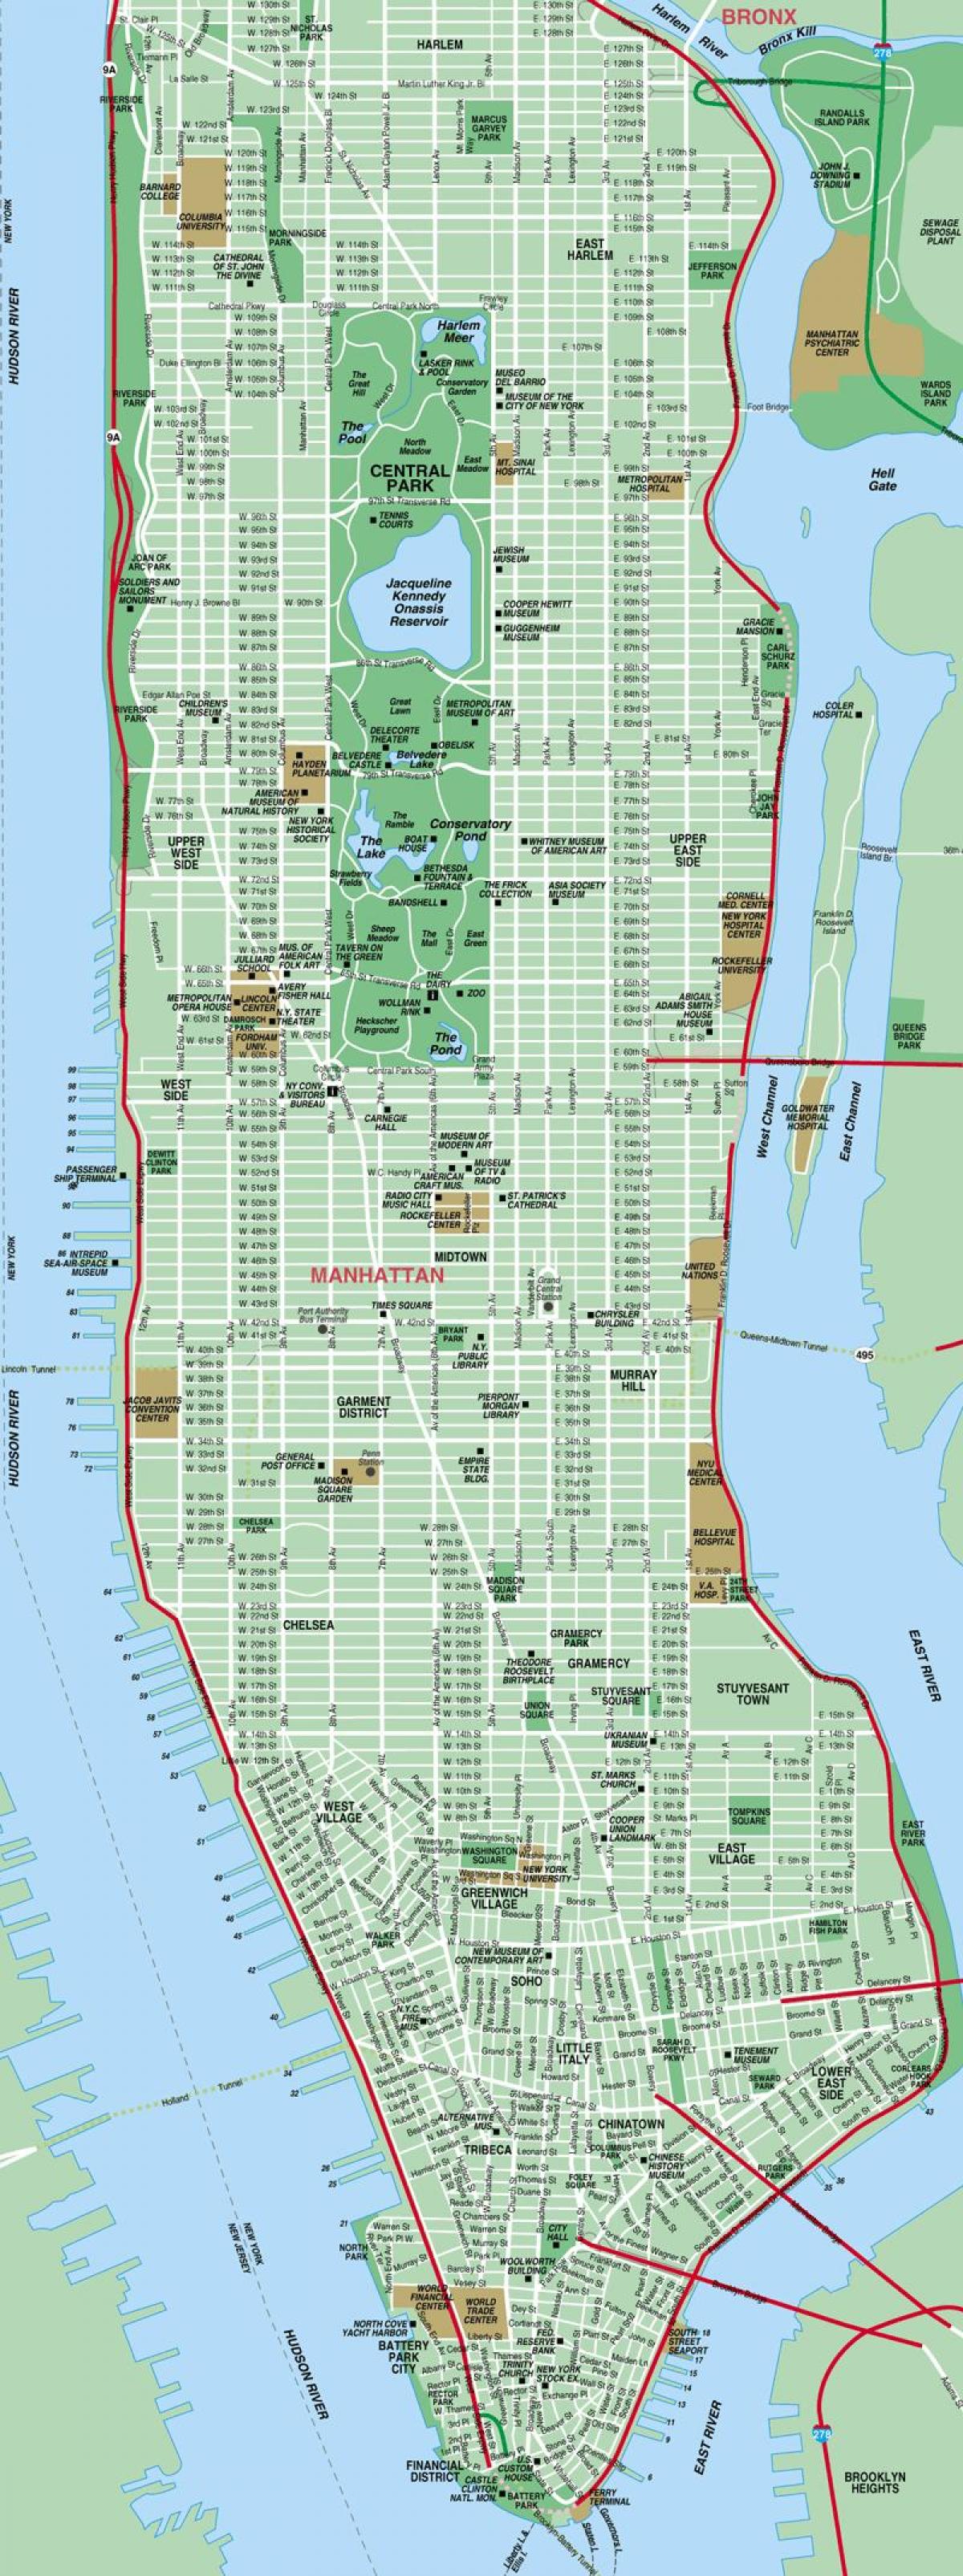 szczegółowa mapa Manhattanu